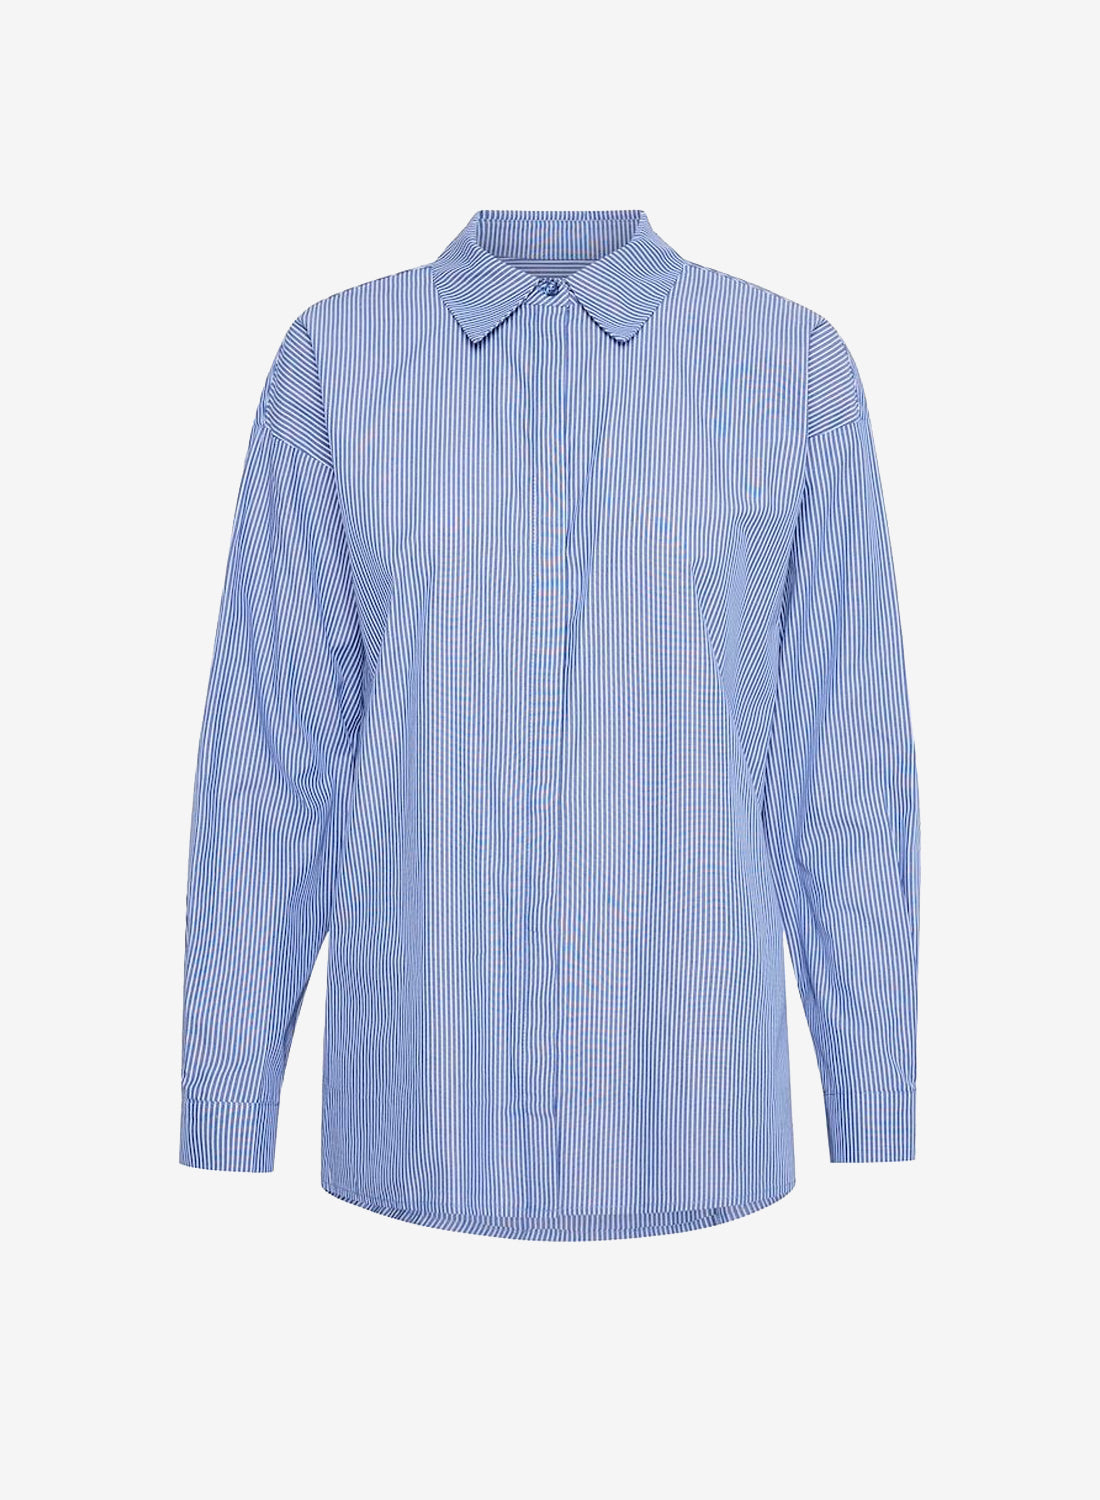 My Essential Wardrobe 03 The Shirt Medium Blue Striped